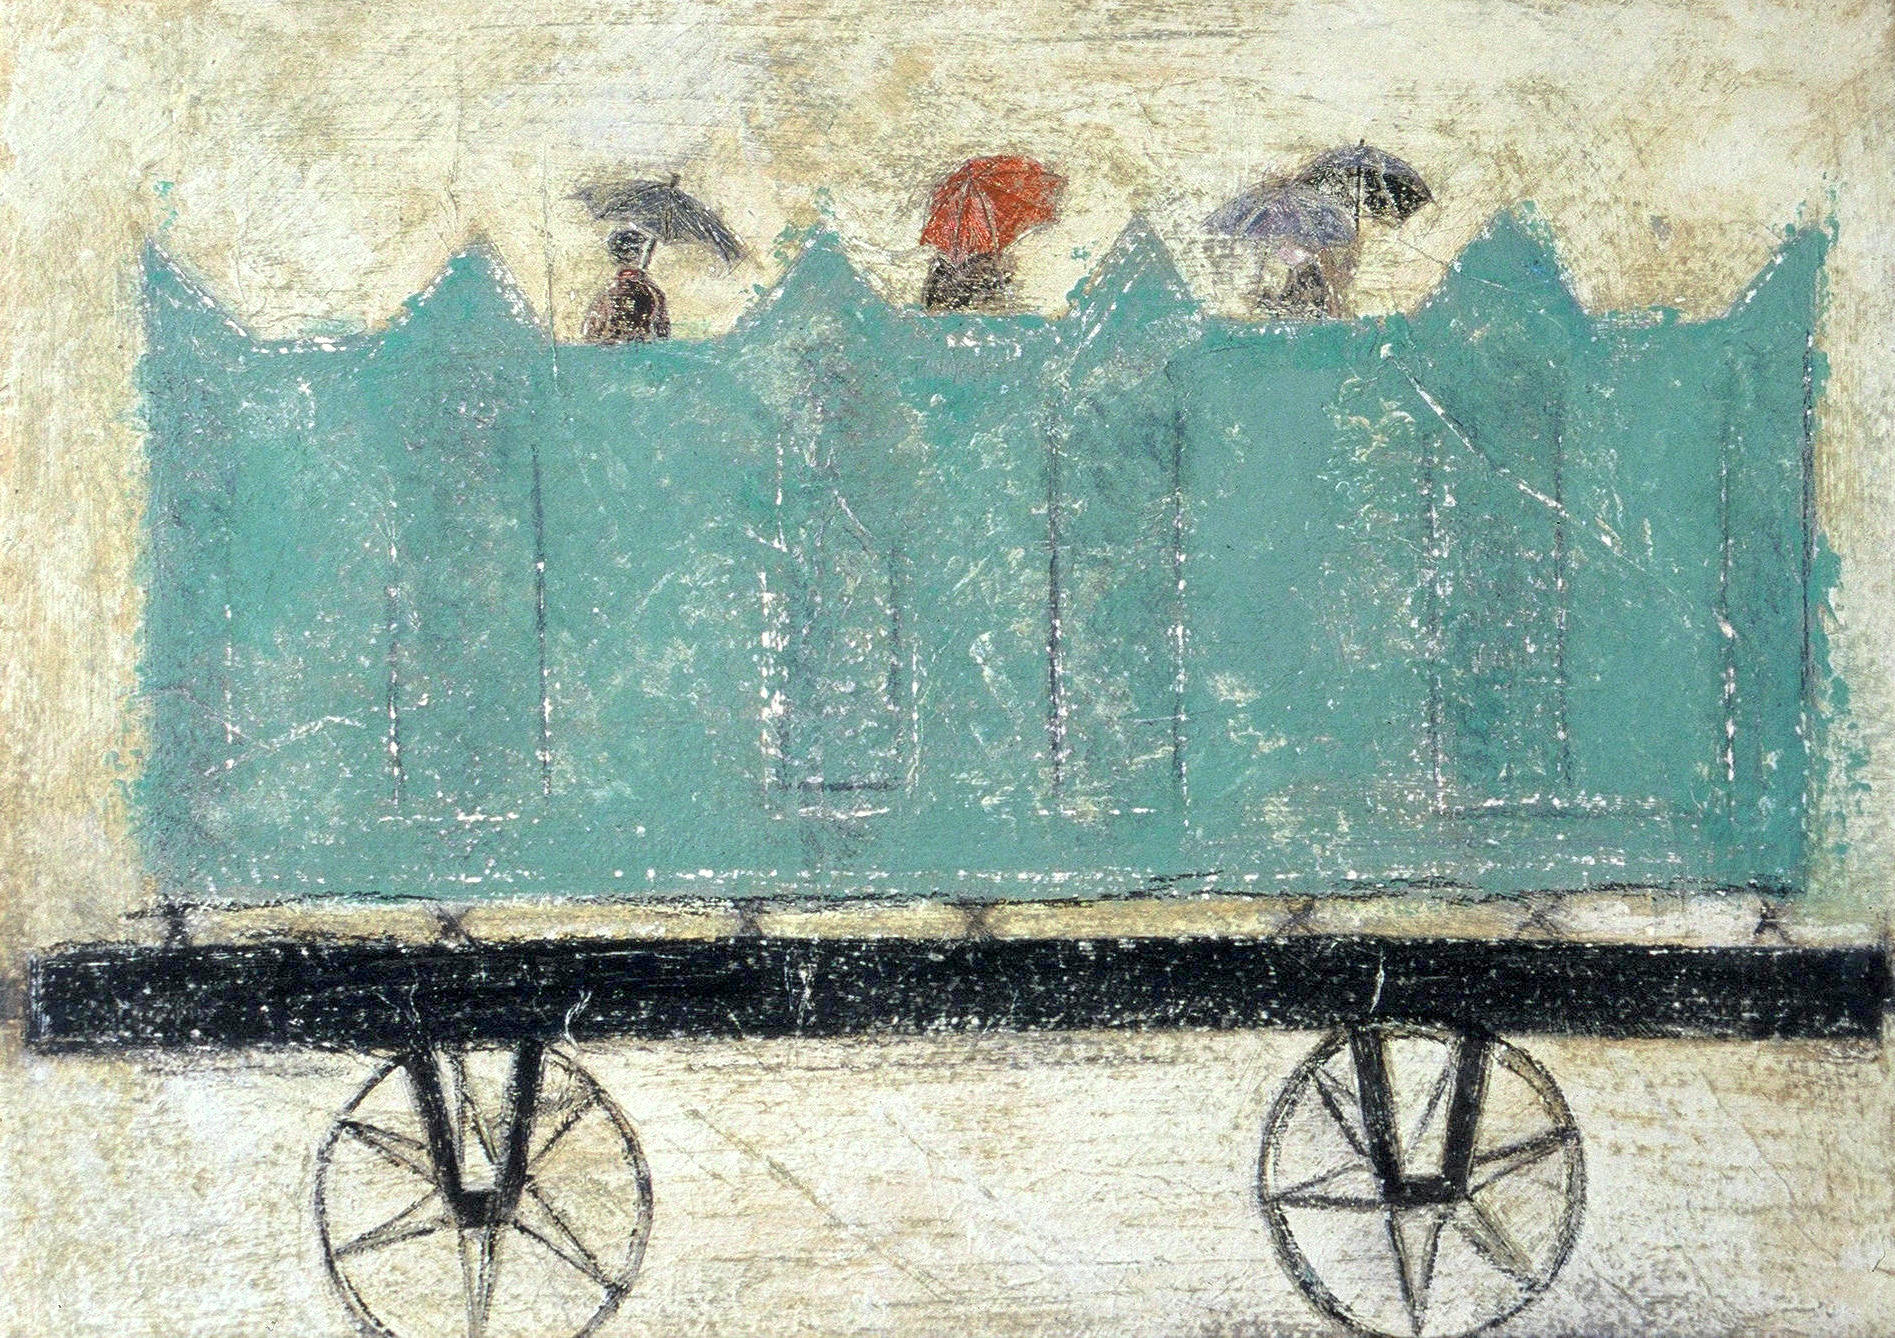 Wagon